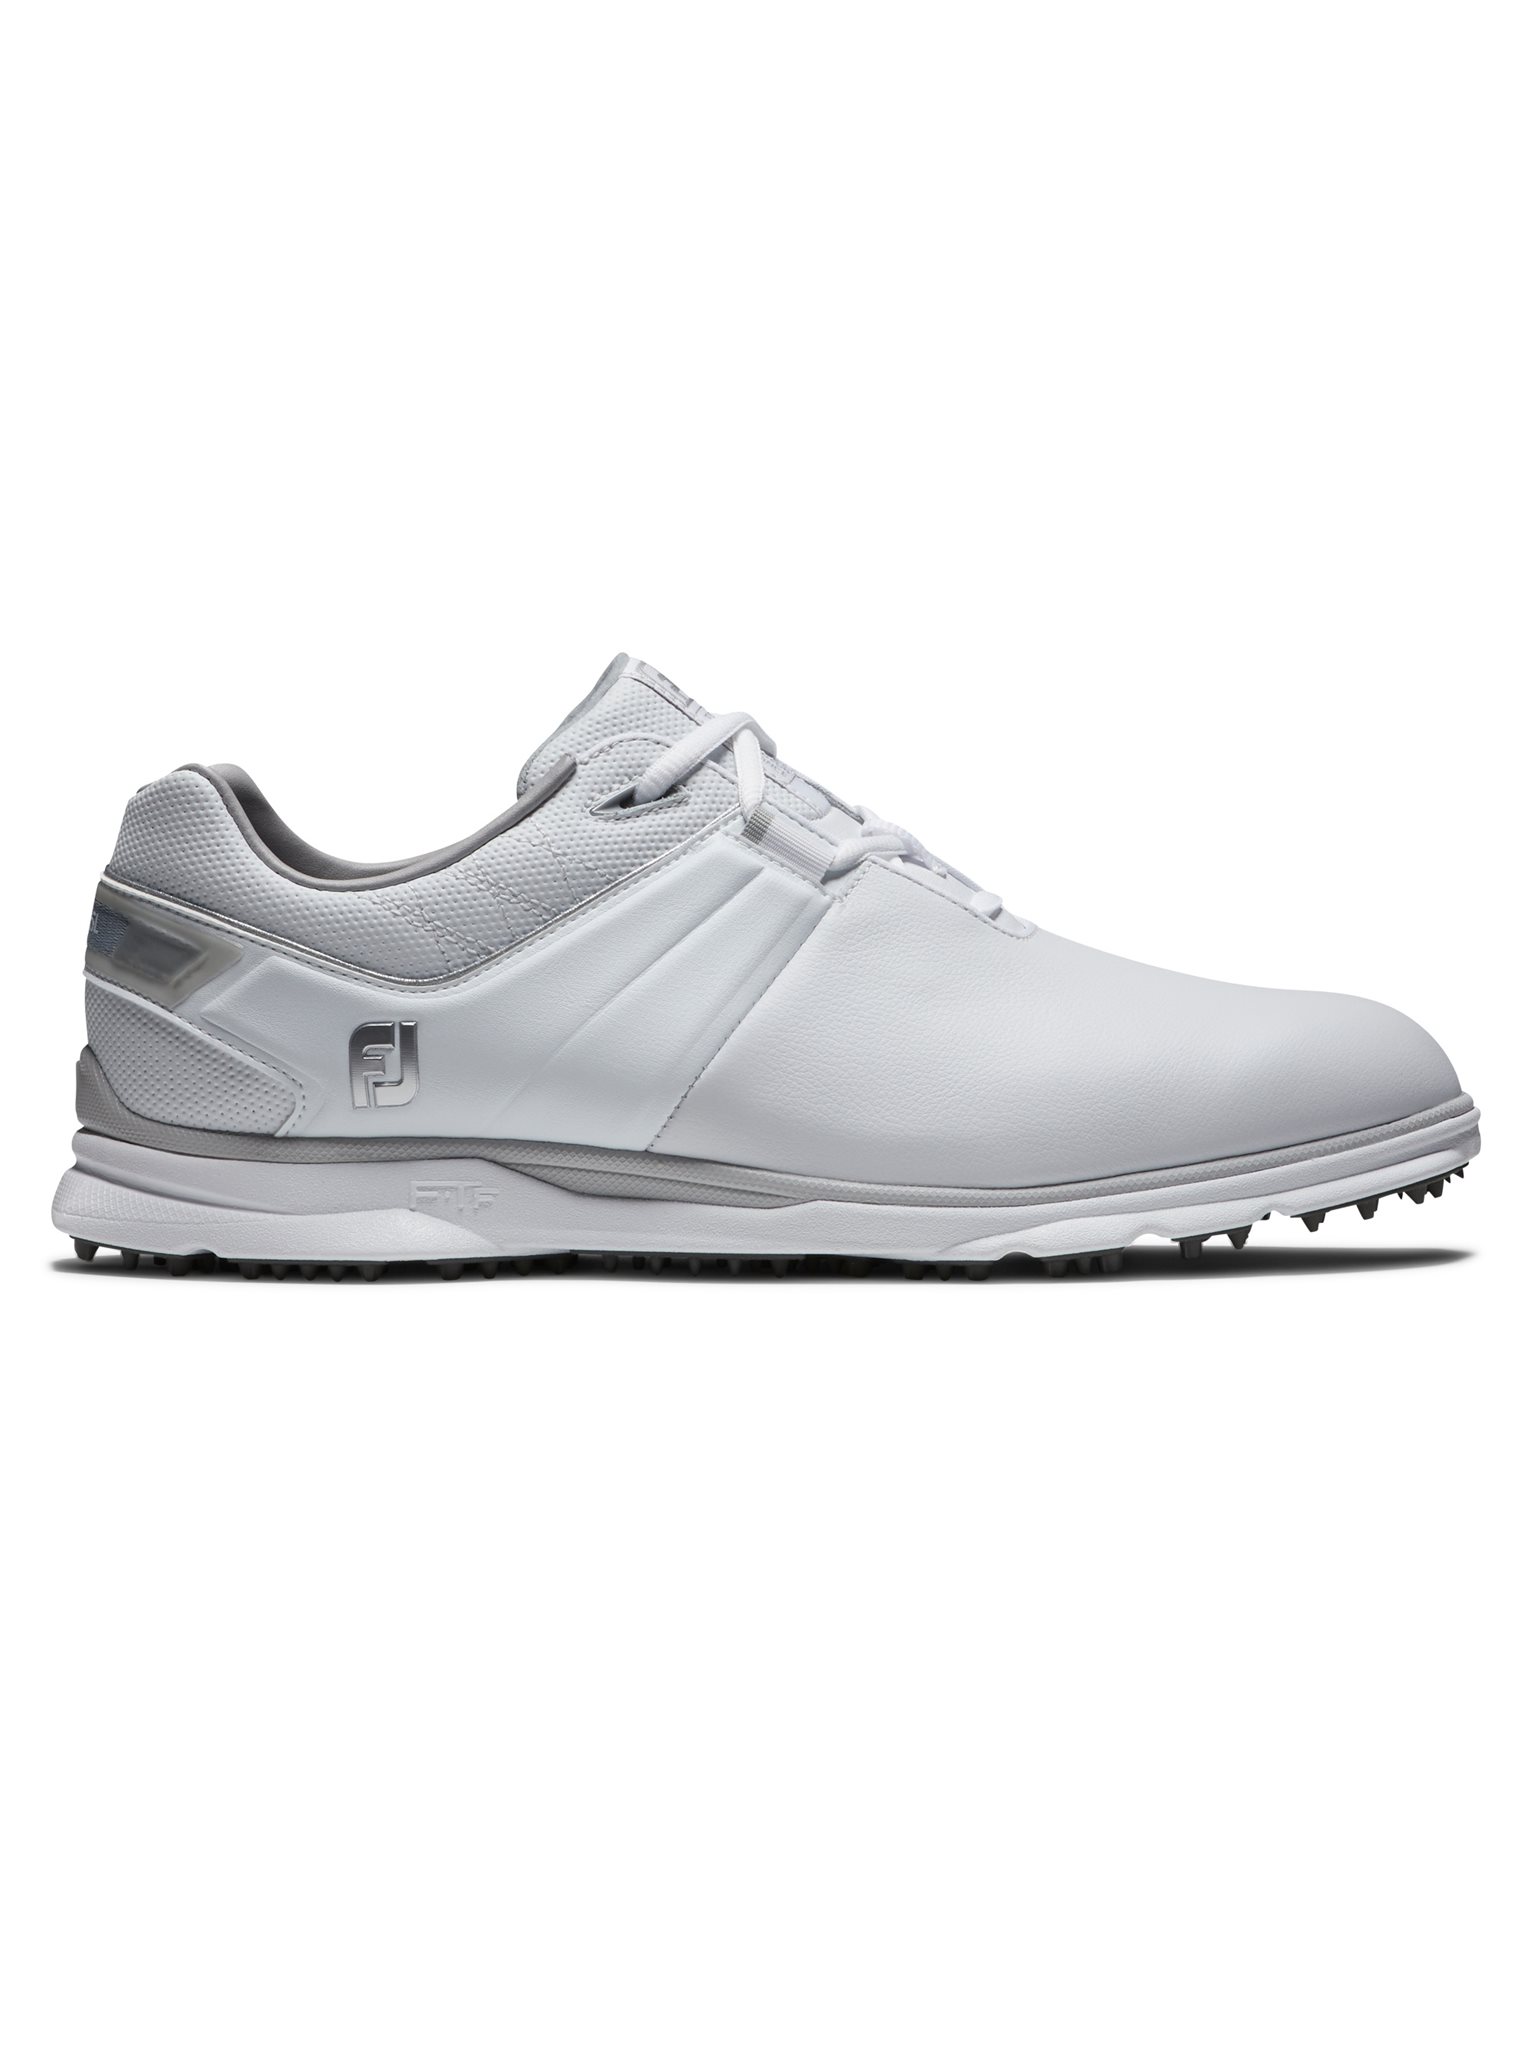 FootJoy heren golfschoenen Pro/SL wit-grijs - Golftassen, Golfclubs, Golfschoenen | Ook online bij Golfers Point Golfers Point